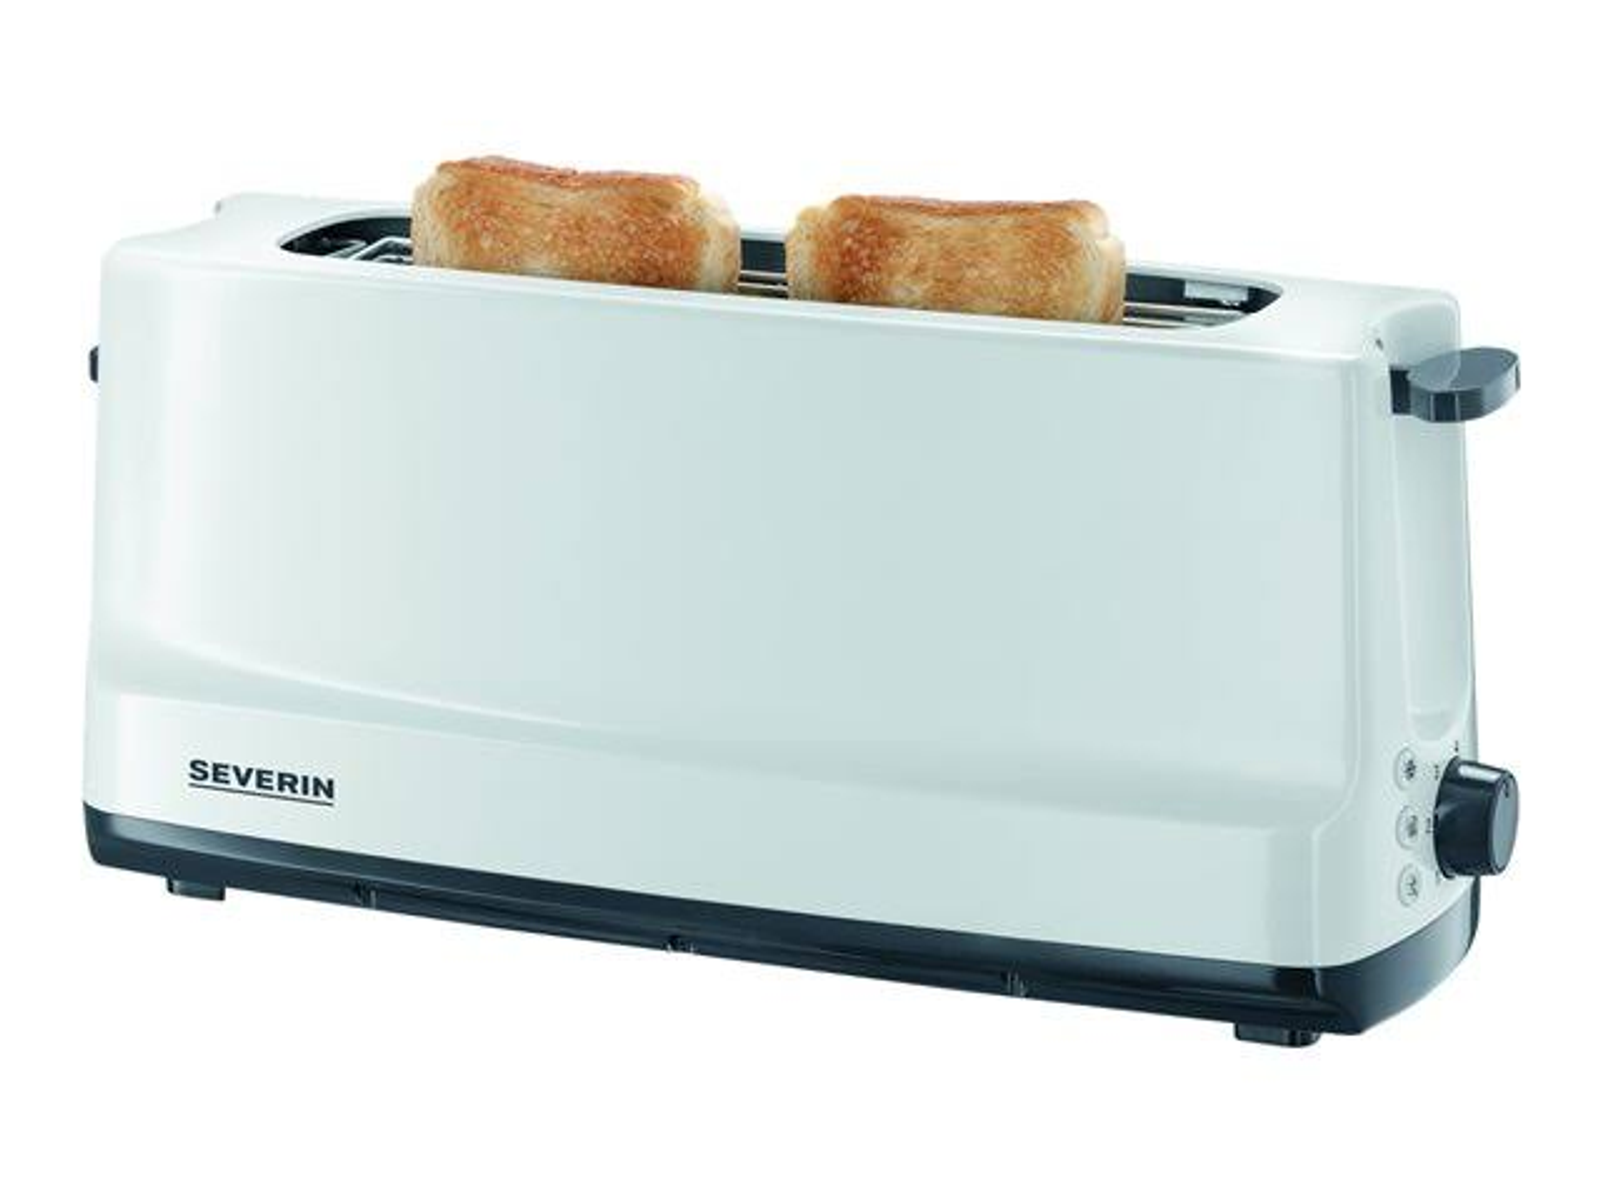 SEVERIN AT 2232 Weiß Watt, Toaster (800 Schlitze: 1,0)